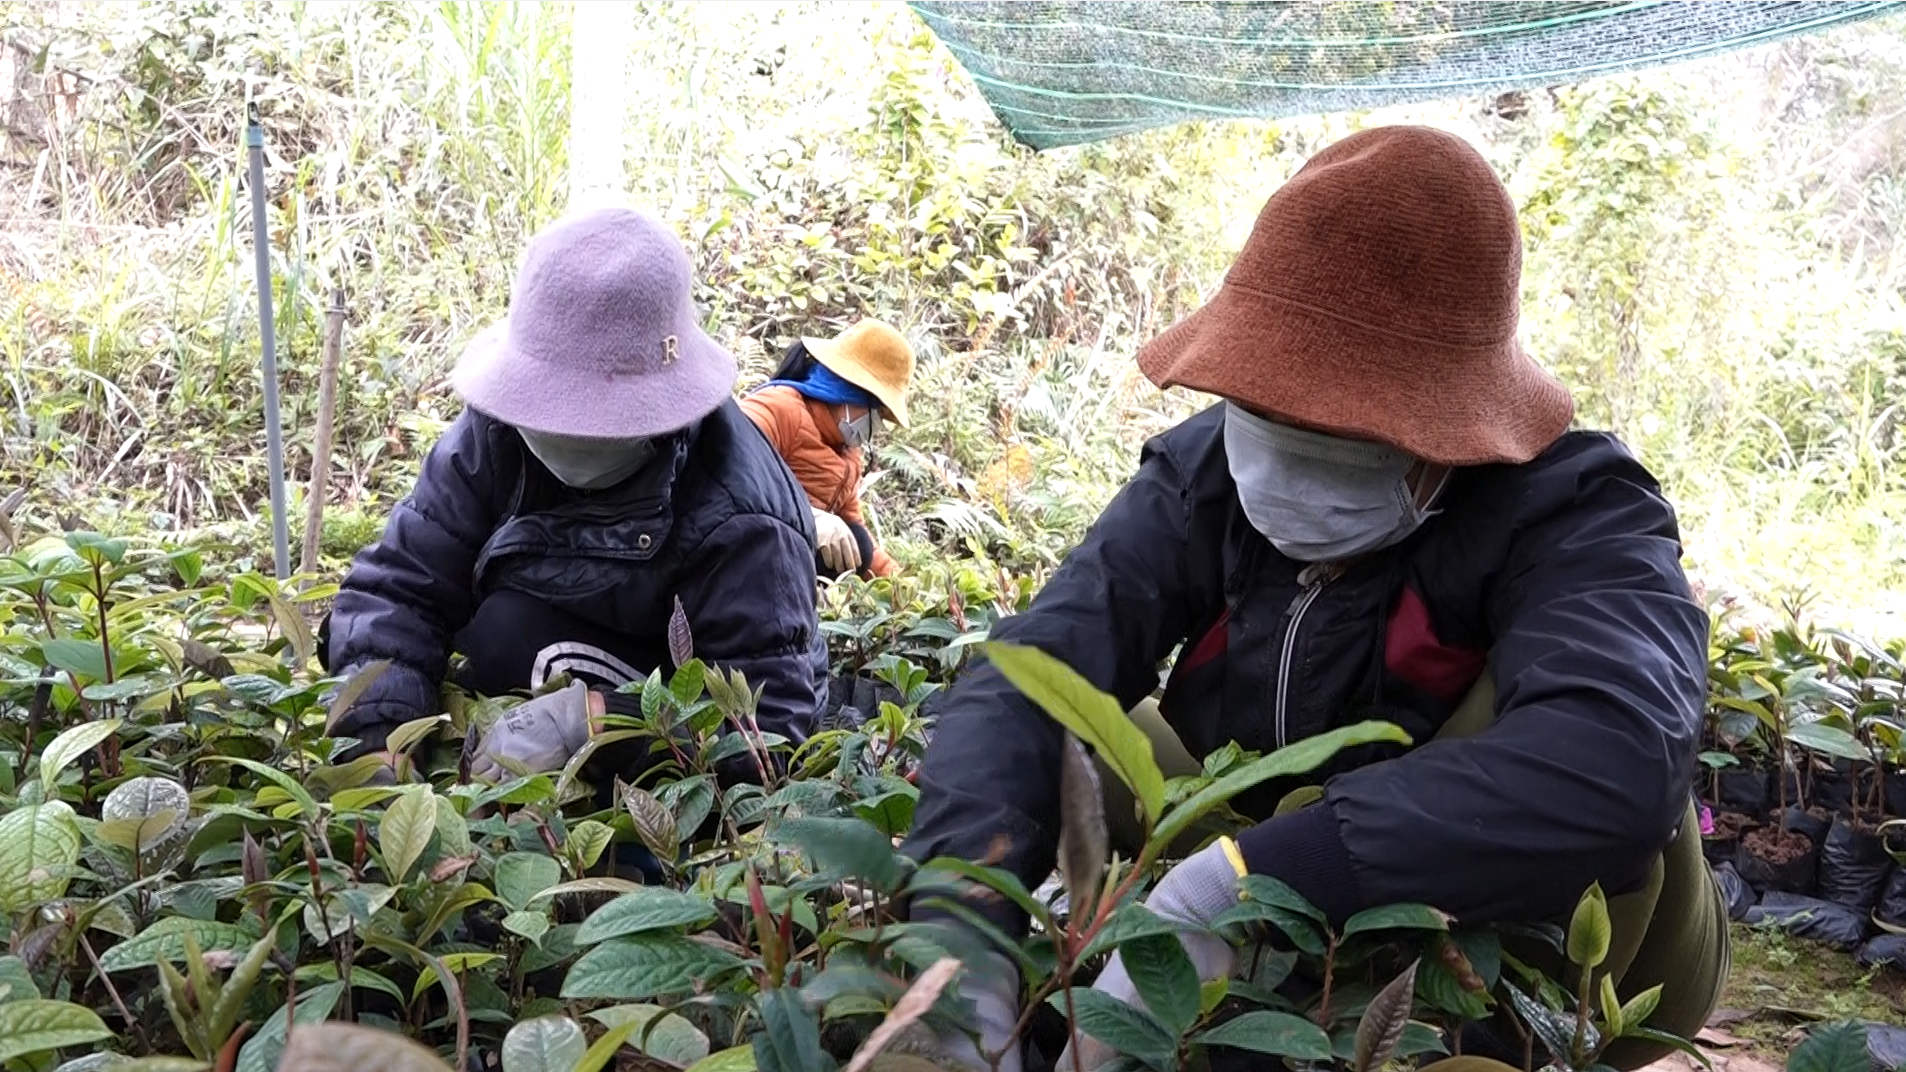 Hiện nay, huyện Ba Chẽ đã chủ động được nguồn cây giống trà hoa vàng đảm bảo chất lượng. Ảnh: Nguyễn Thành.